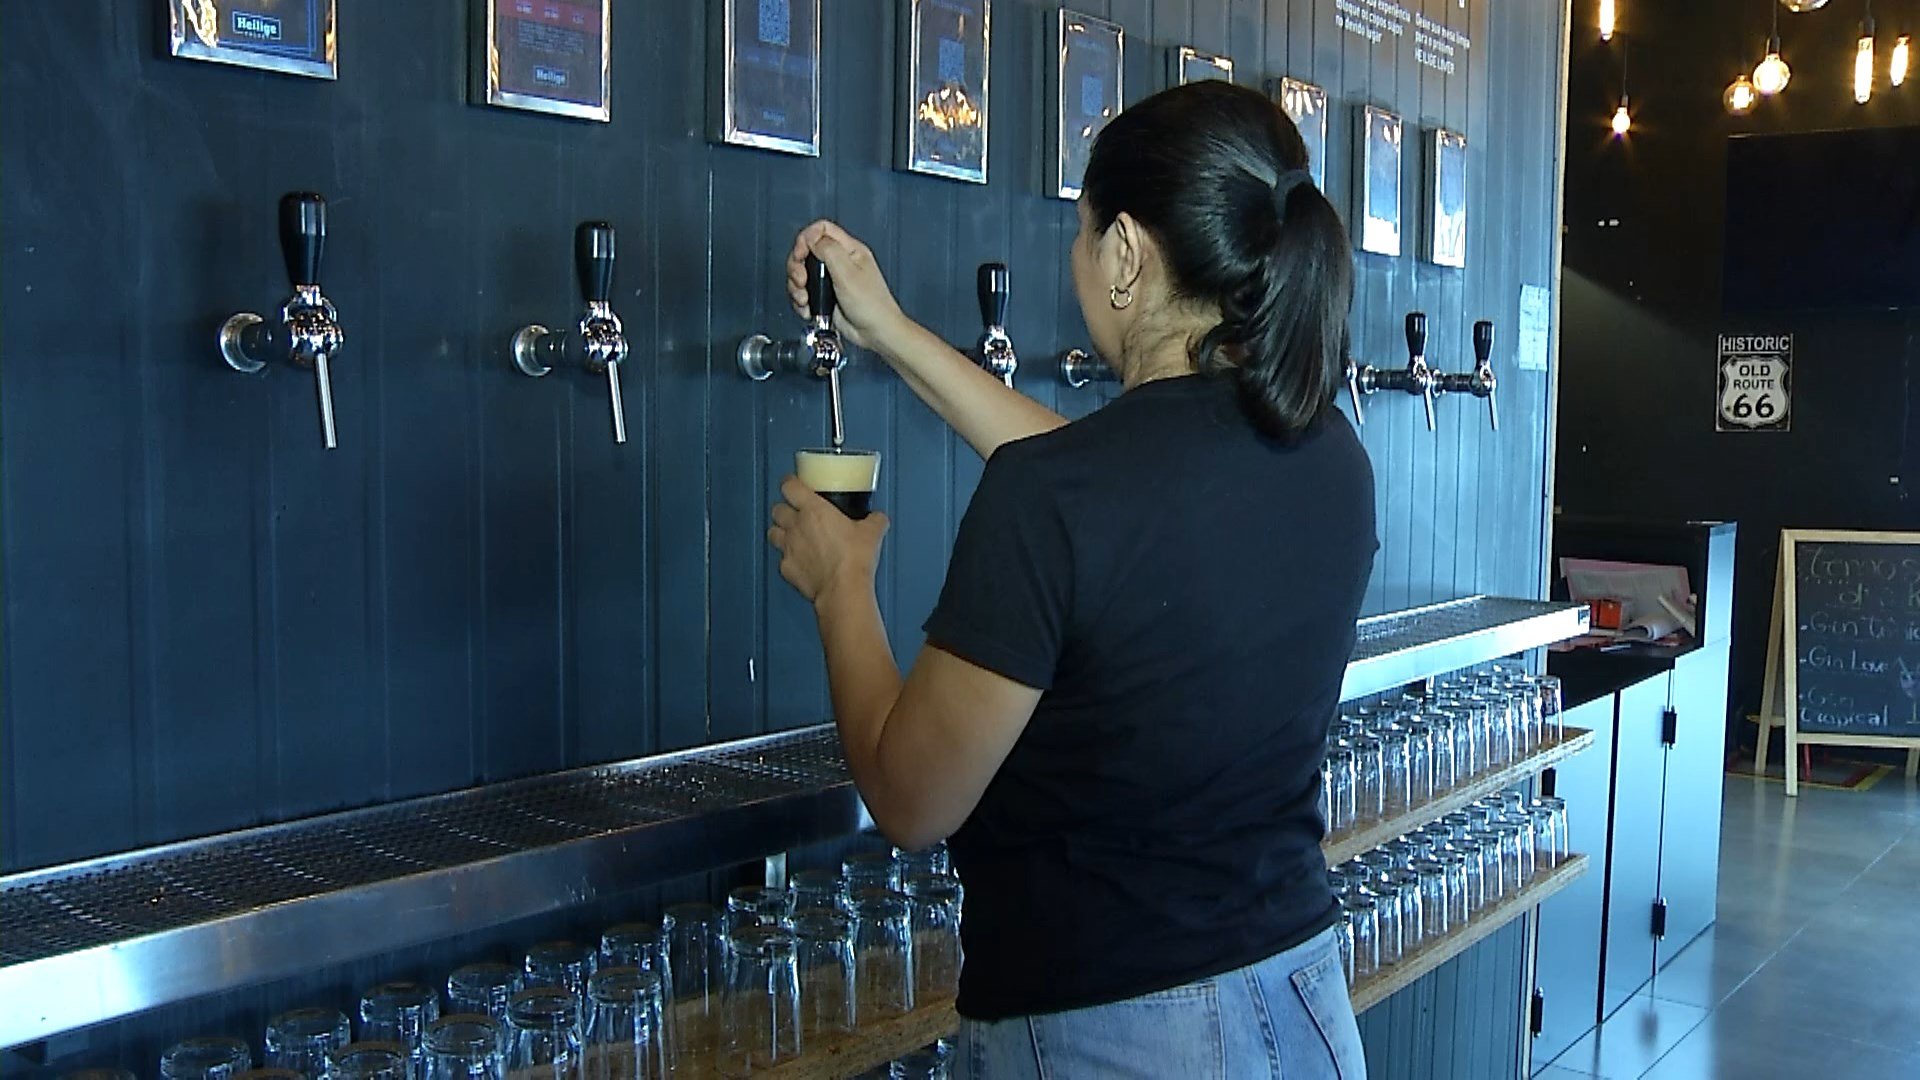 Venda de cerveja aumenta em bares durante mundial de futebol em Manaus